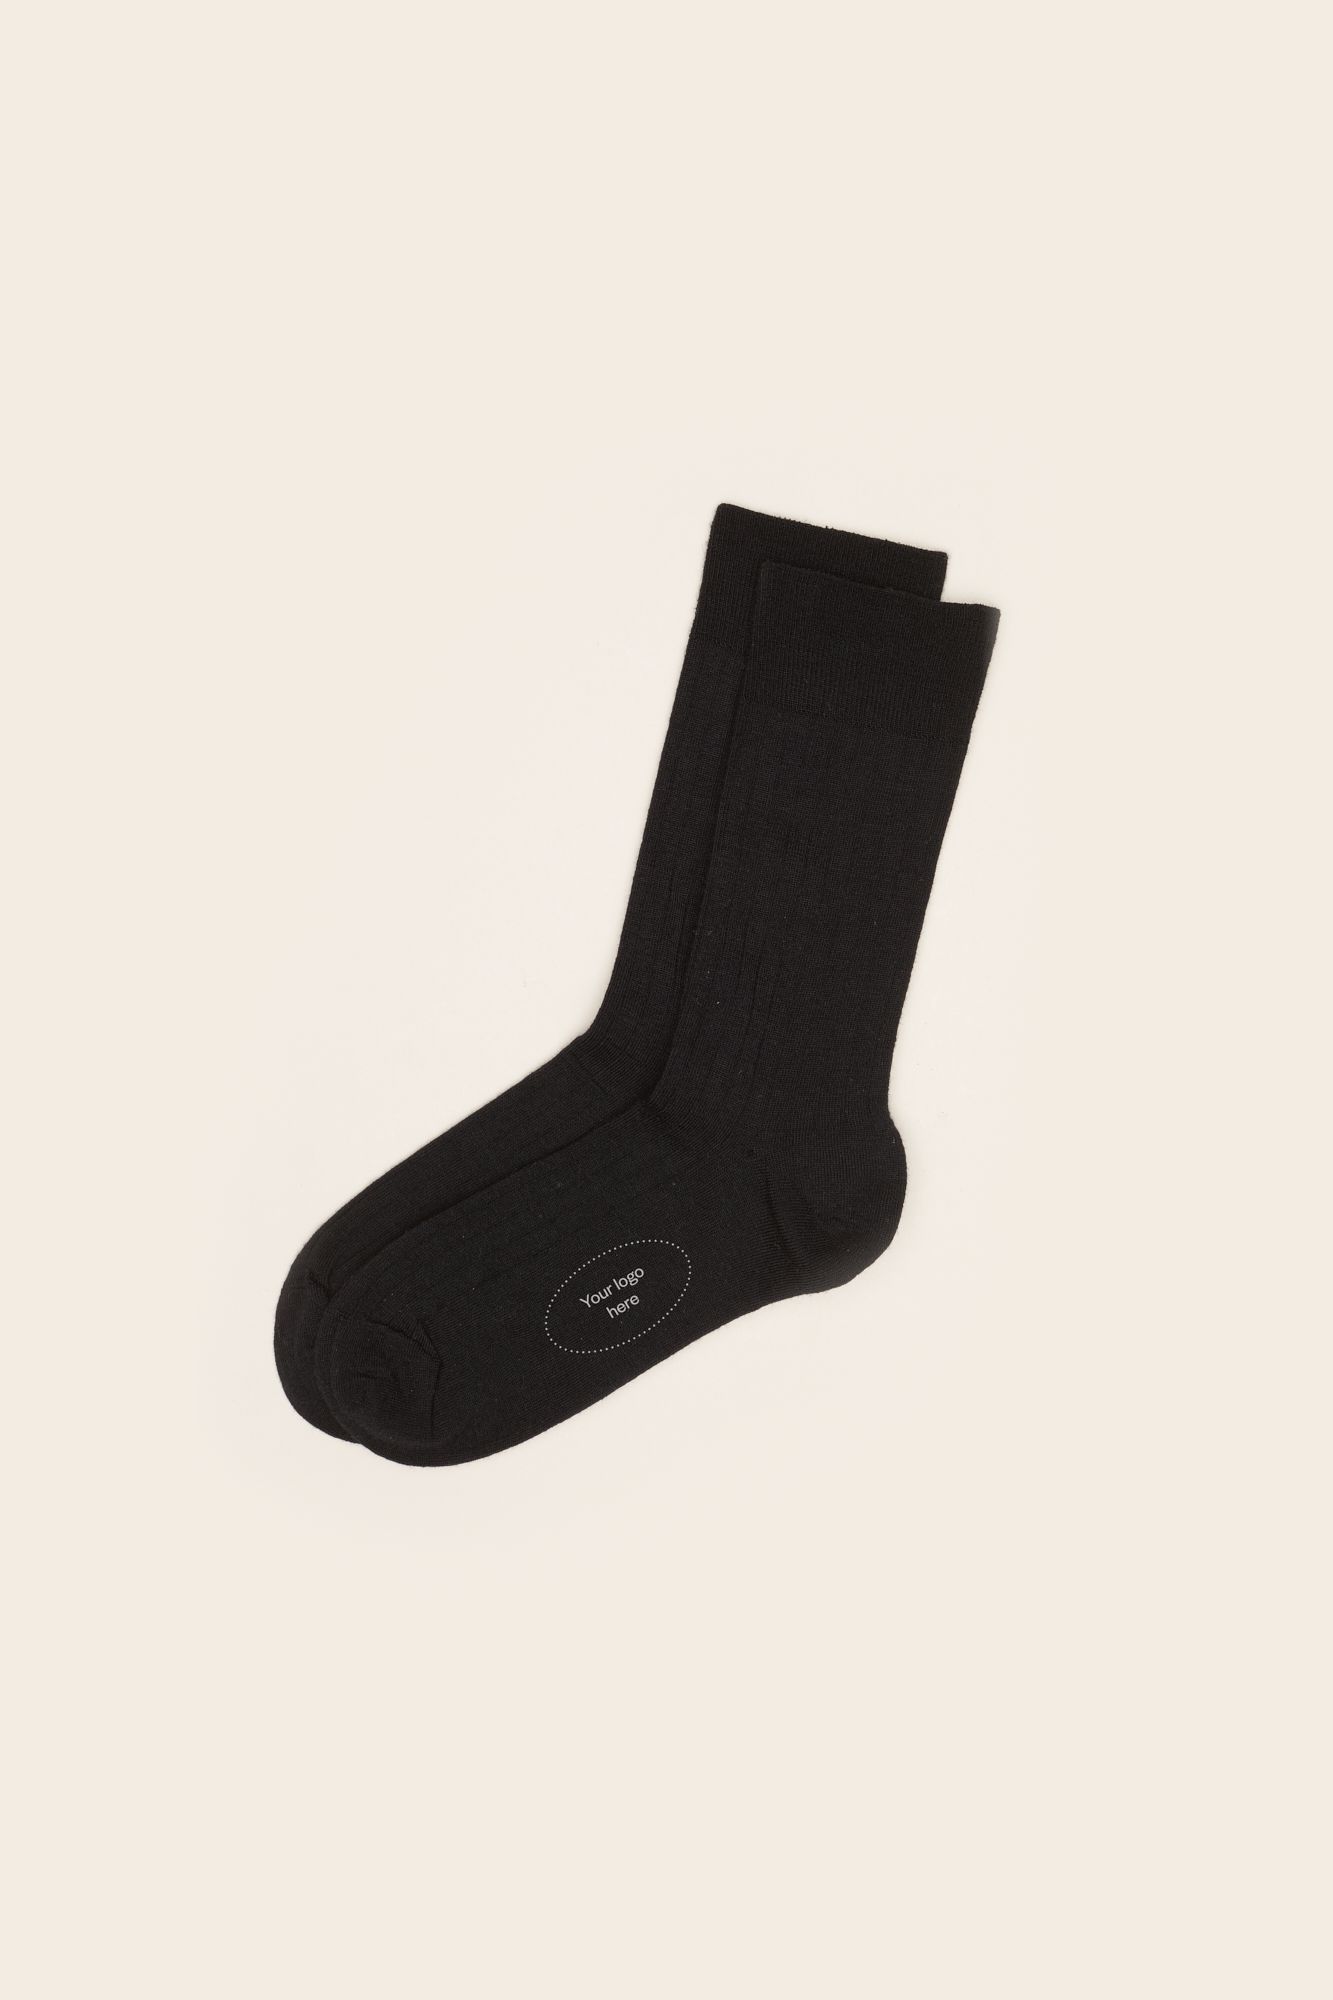 11) Wool socks_black.jpg